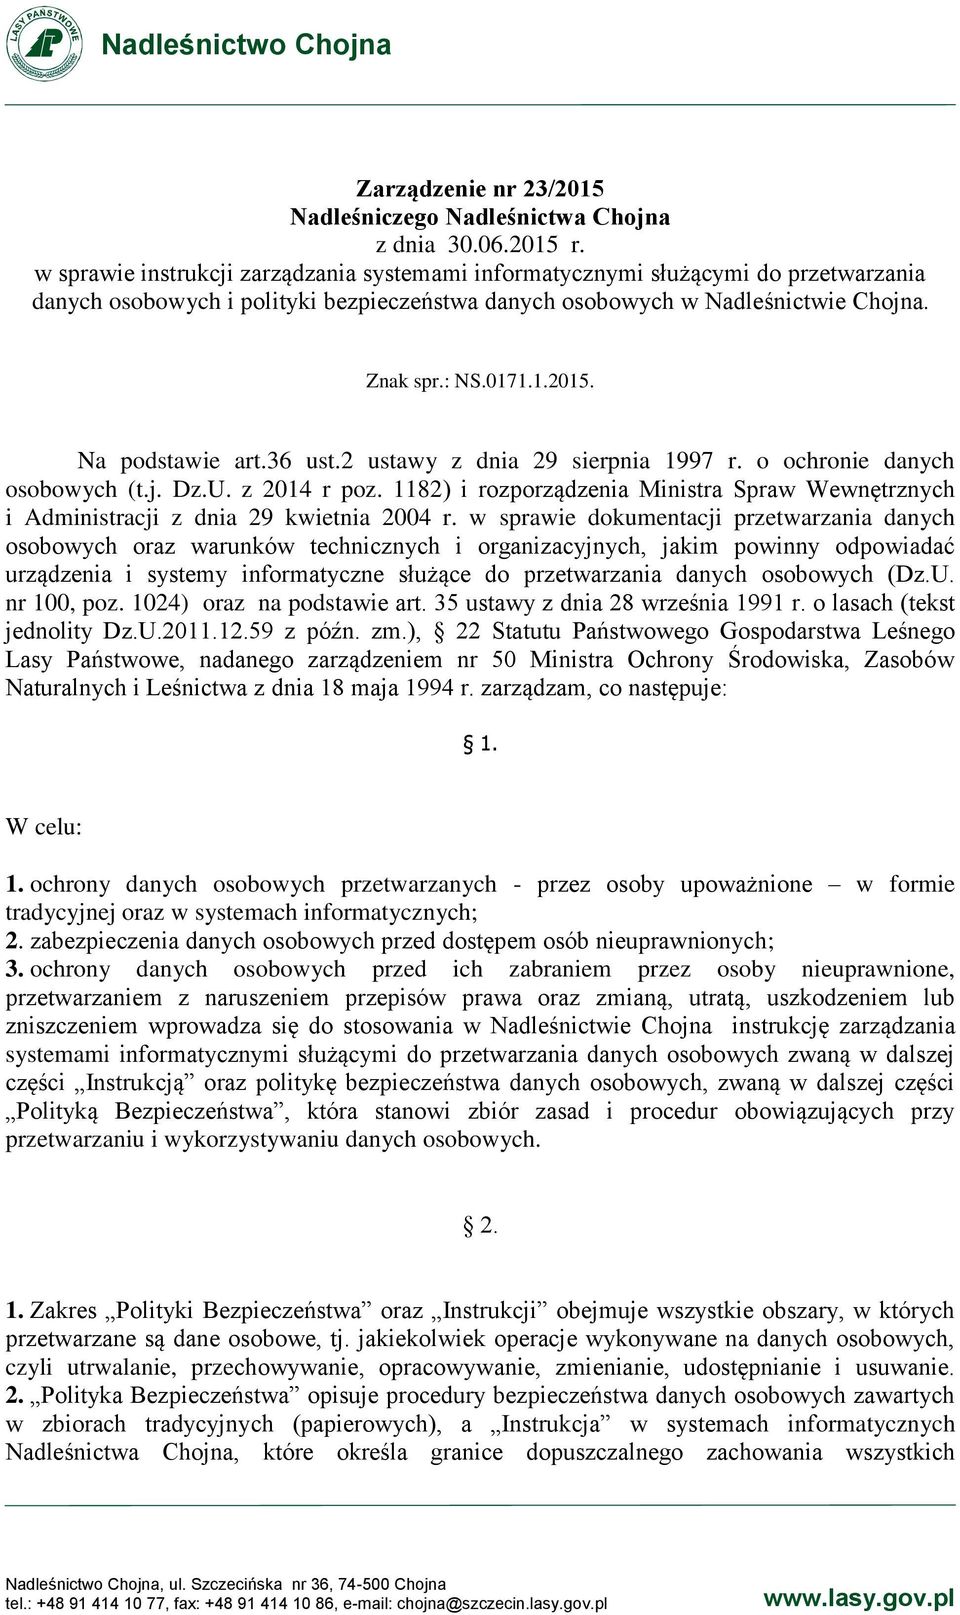 Na podstawie art.36 ust.2 ustawy z dnia 29 sierpnia 1997 r. o ochronie danych osobowych (t.j. Dz.U. z 2014 r poz.